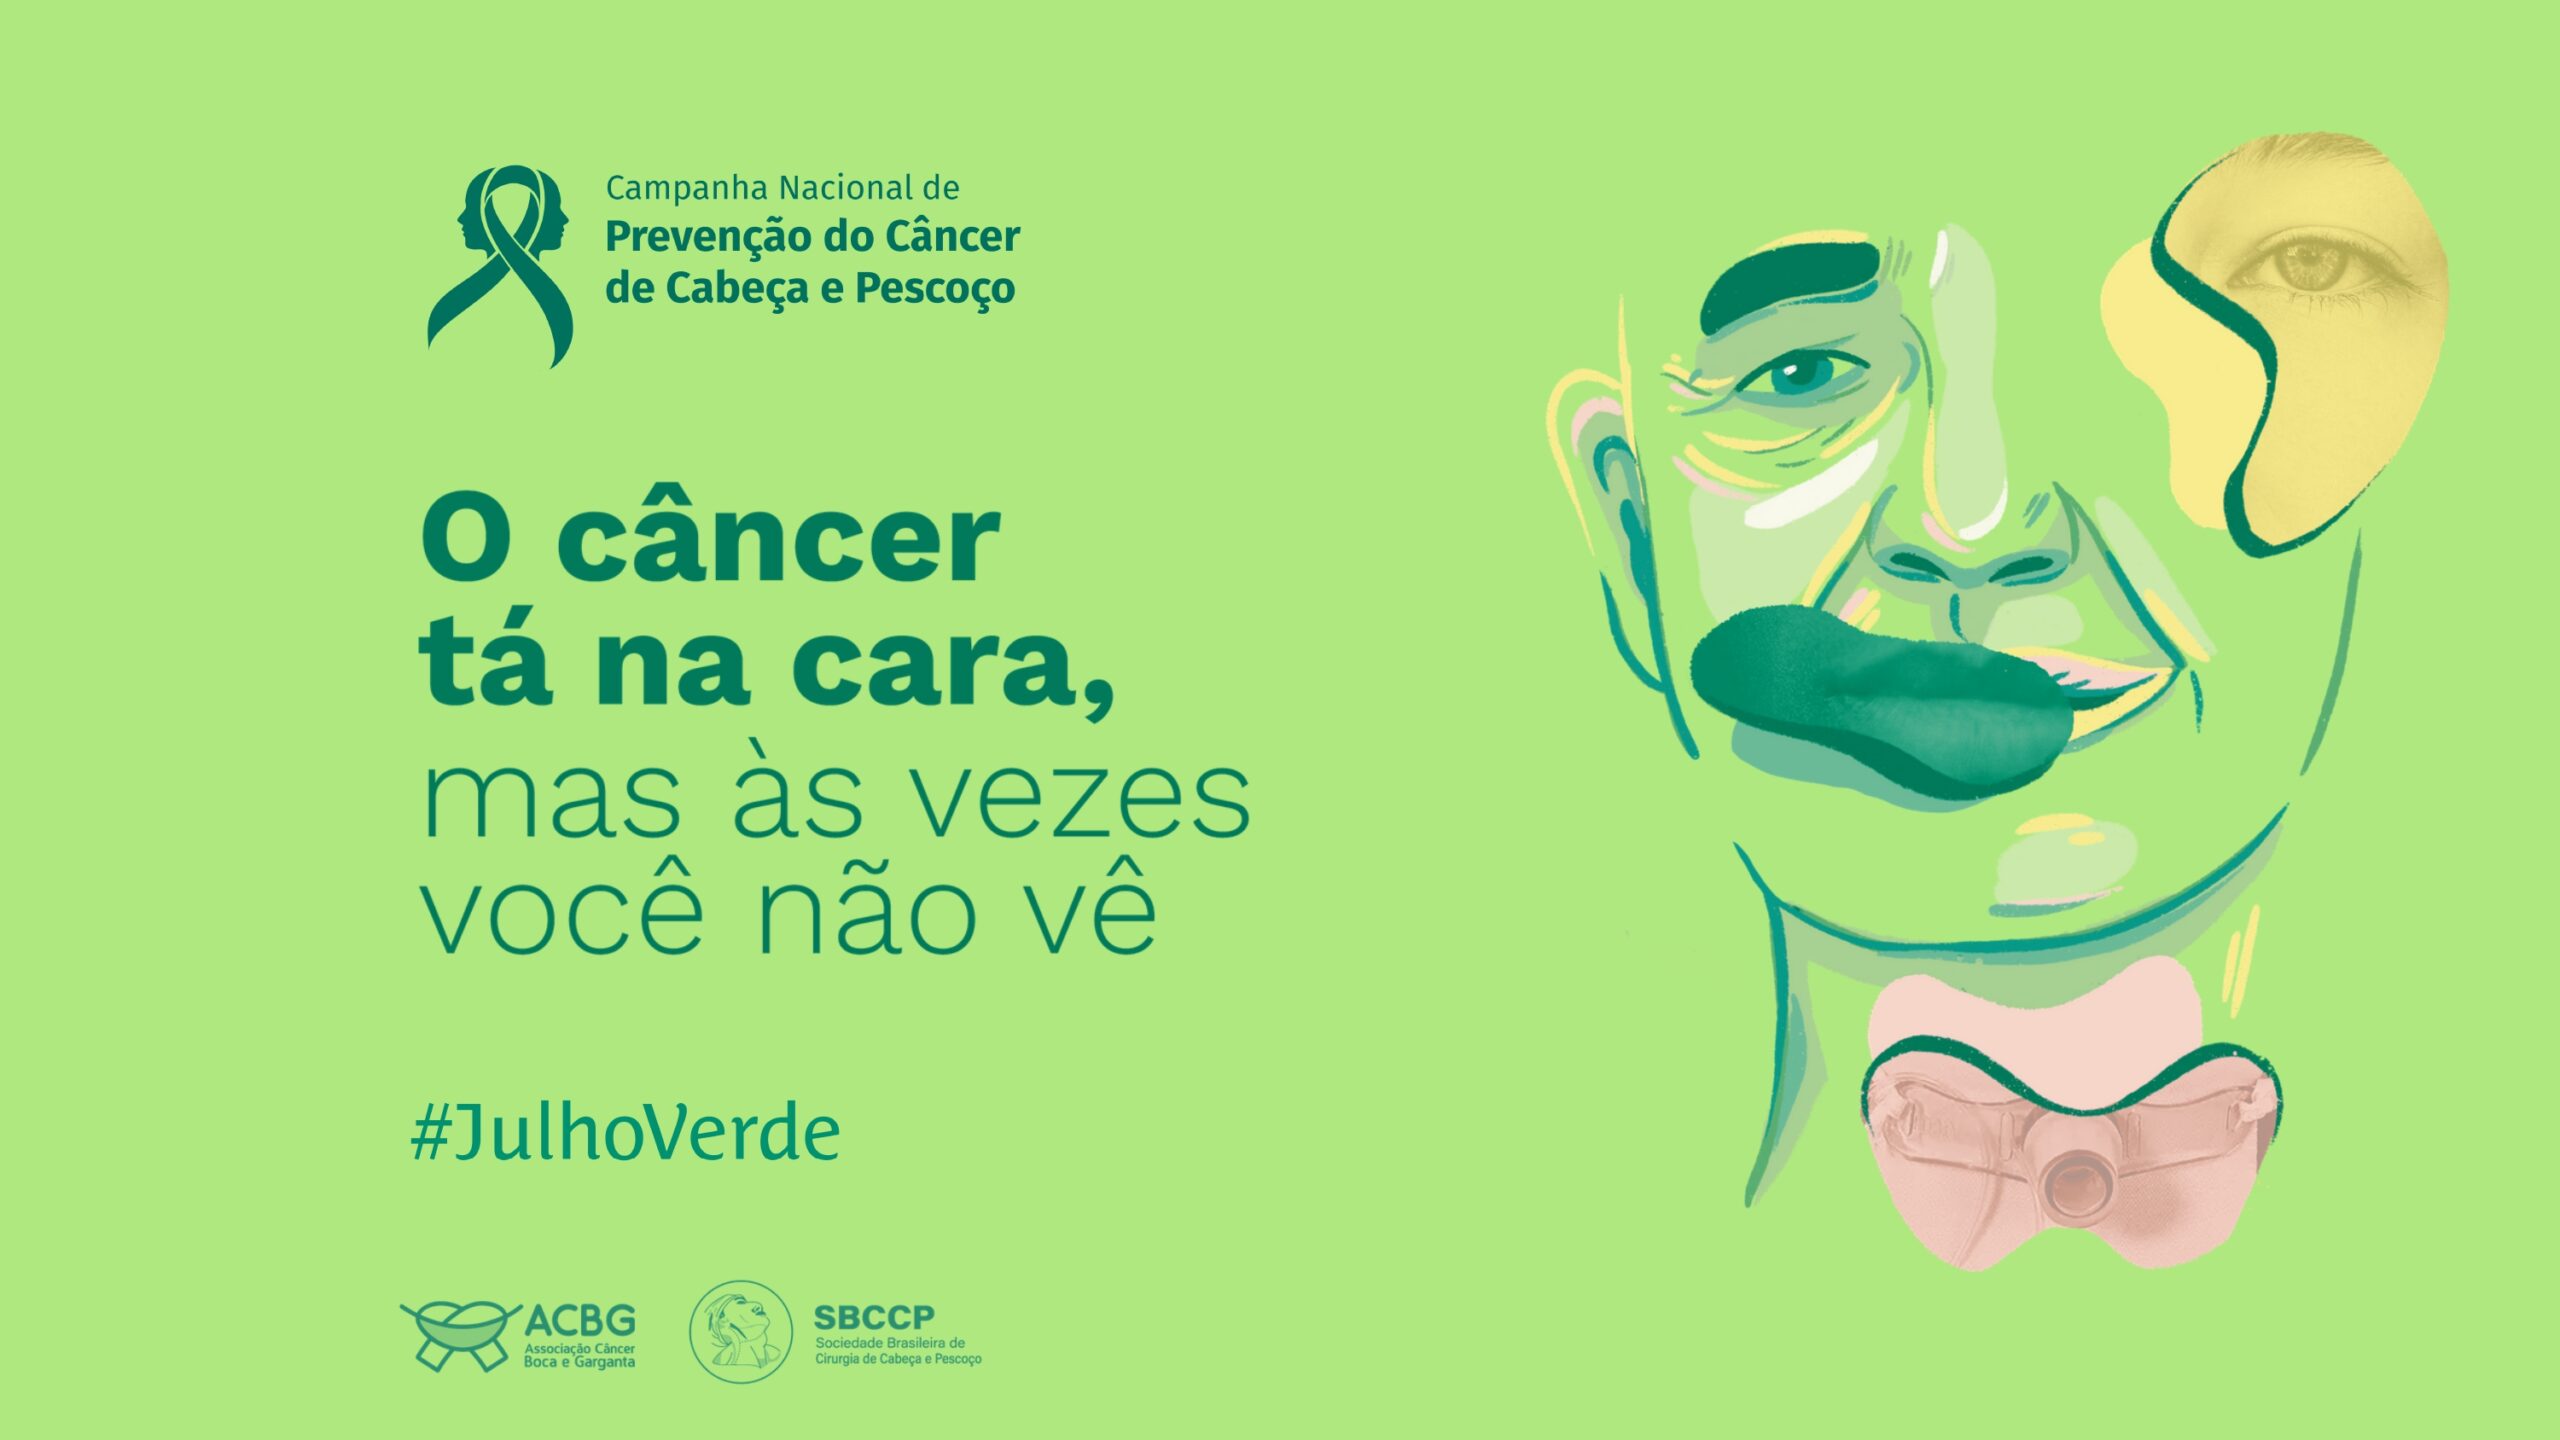 ABORL-CCF apoia Julho Verde e promove conscientização sobre diagnóstico precoce de câncer de cabeça e pescoço